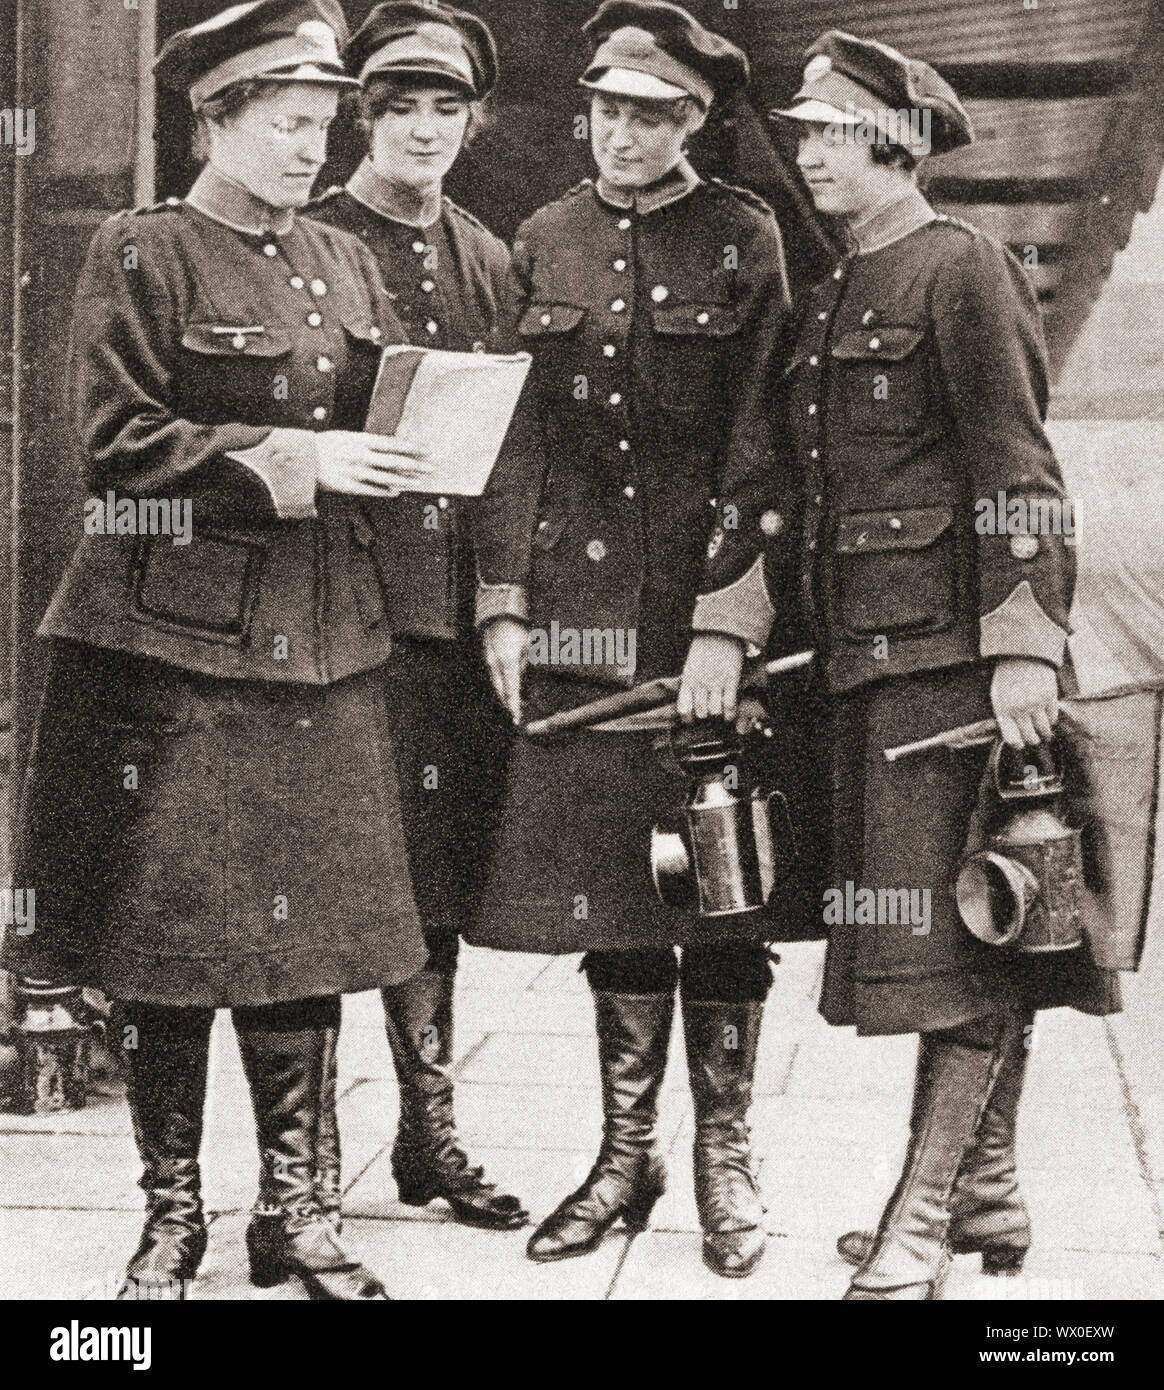 Frauen arbeiten als Torhüter, Wachen und Inspektoren in der Londoner U-Bahn während des Zweiten Weltkrieges ein. Aus dem Festzug des Jahrhunderts, veröffentlicht 1934. Stockfoto